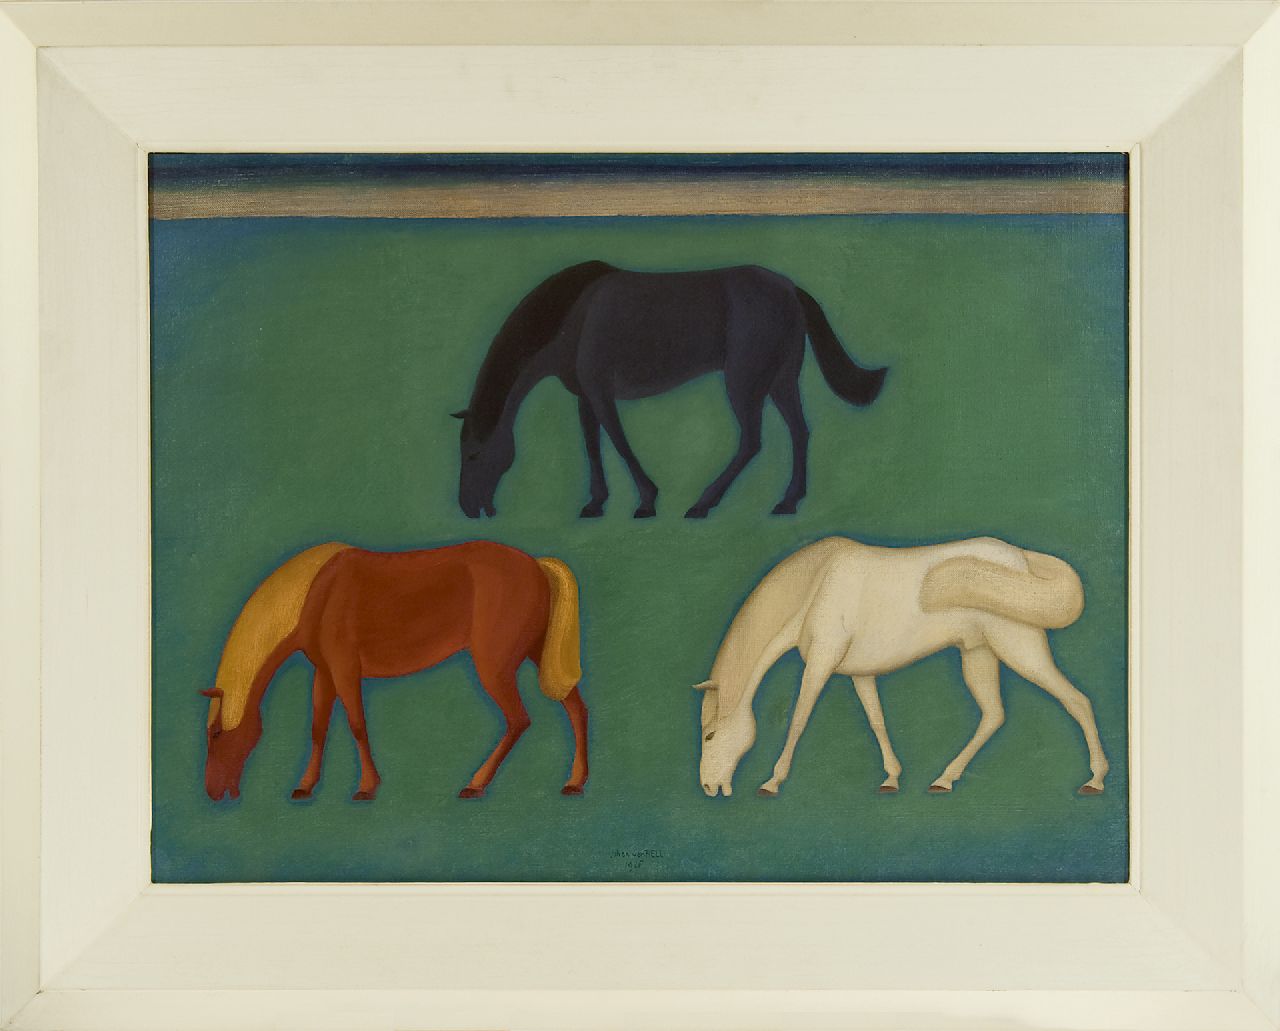 Hell J.G.D. van | Johannes Gerardus Diederik 'Johan' van Hell | Schilderijen te koop aangeboden | Grazende paarden, olieverf op doek 60,5 x 80,5 cm, gesigneerd middenonder en gedateerd 1926